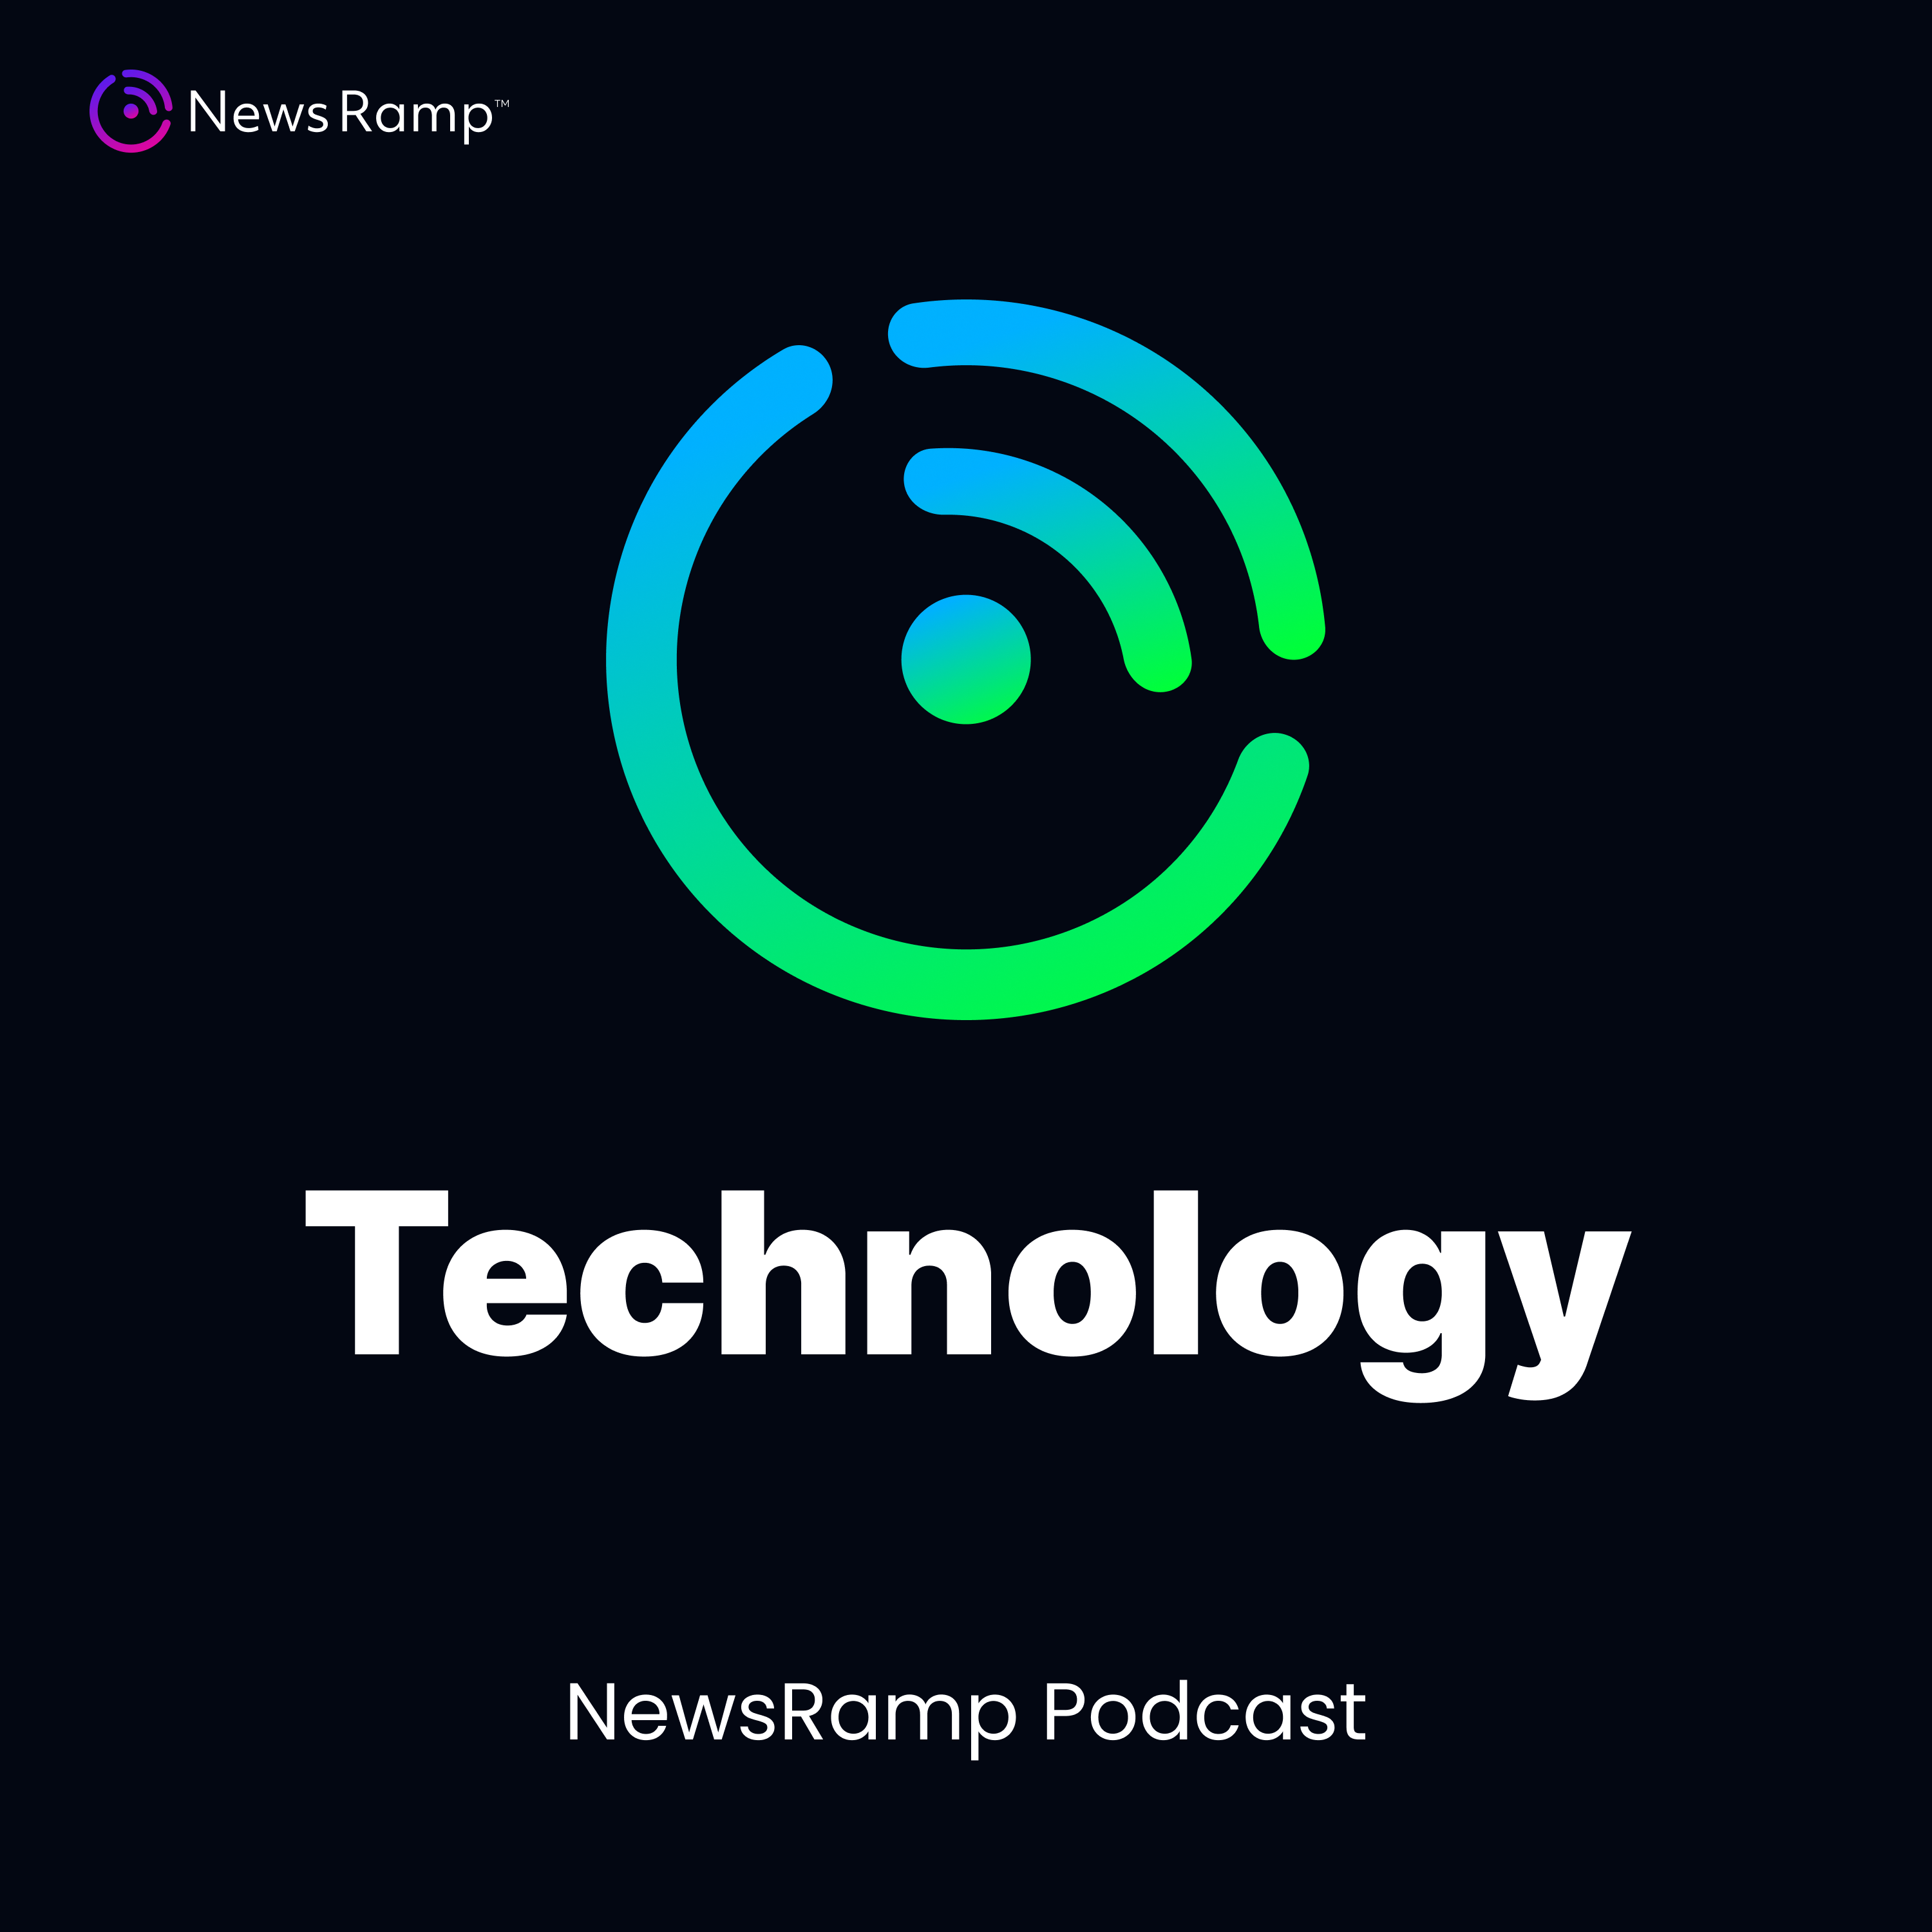 NewsRamp Technology Podcast artwork